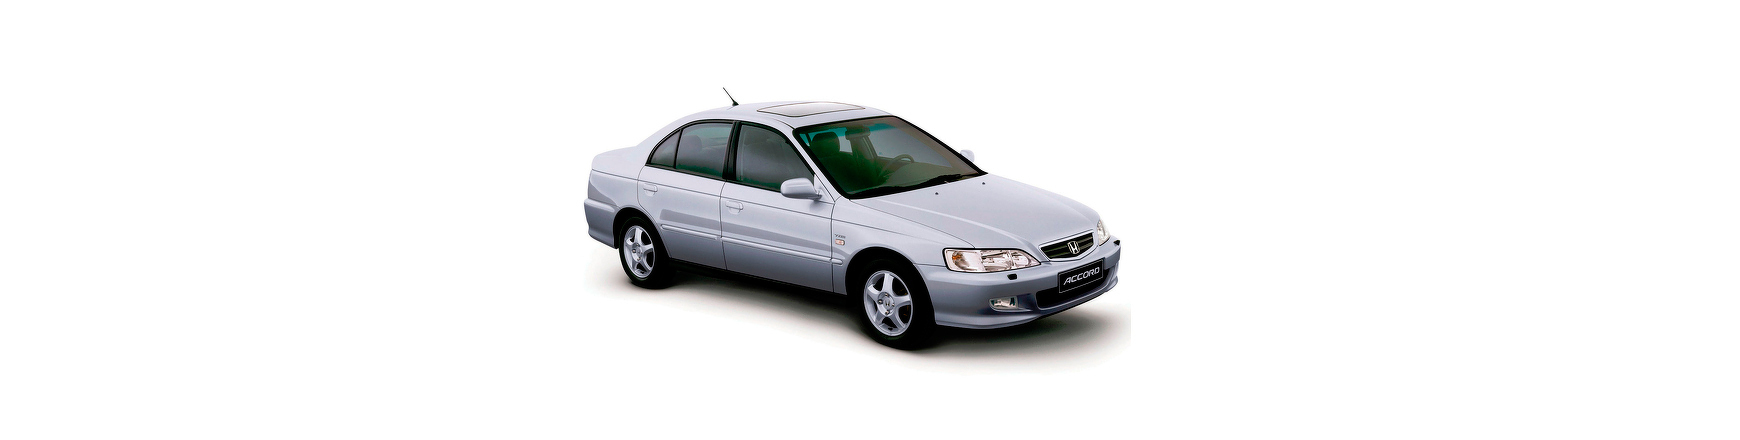 Piezas y Recambios de Honda Accord de 1998 a 2003 | Veramauto.es